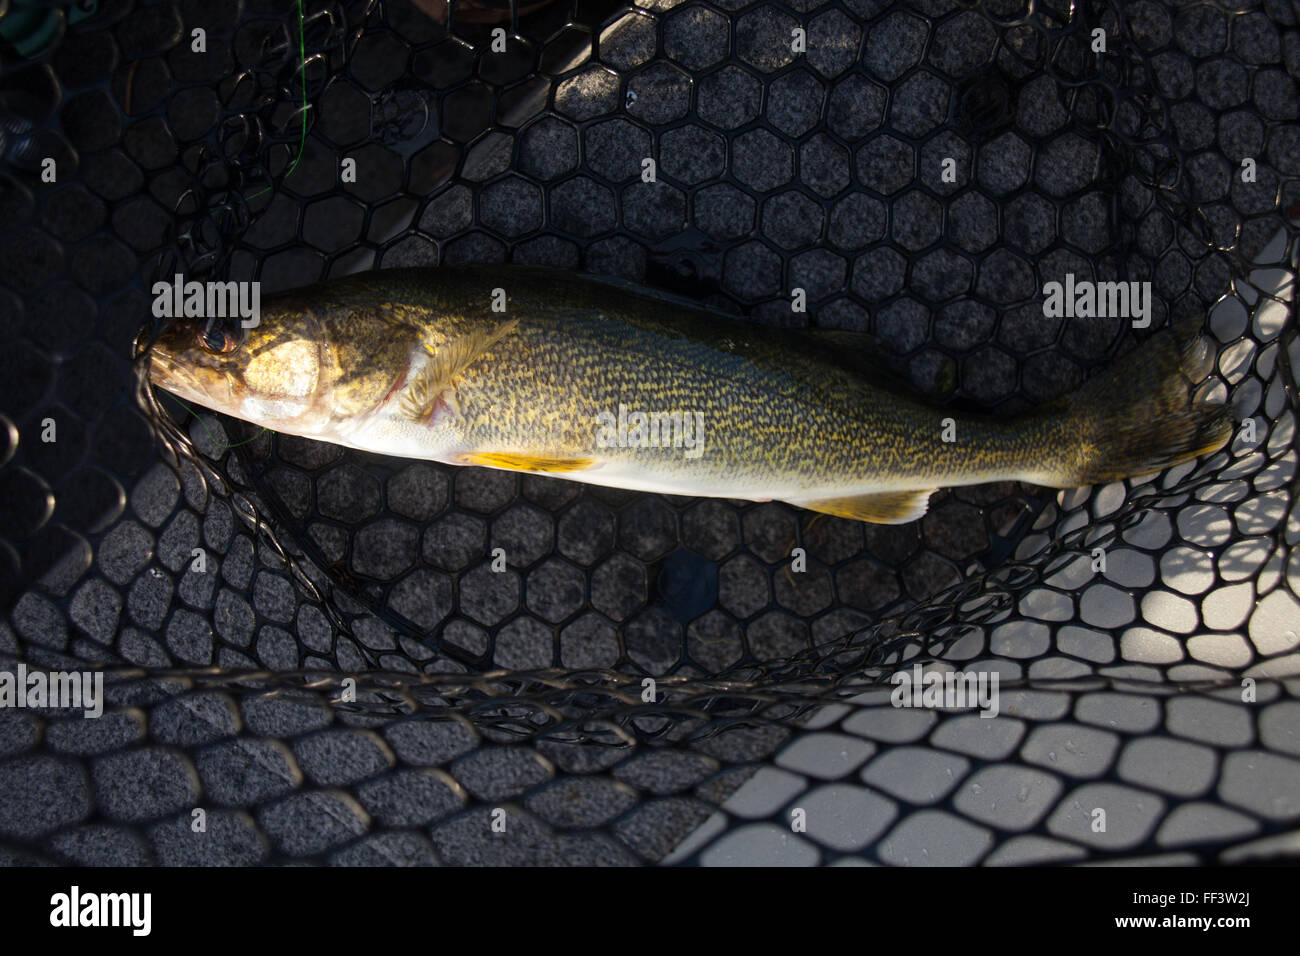 https://c8.alamy.com/comp/FF3W2J/walleye-caught-by-angler-in-fishing-net-FF3W2J.jpg